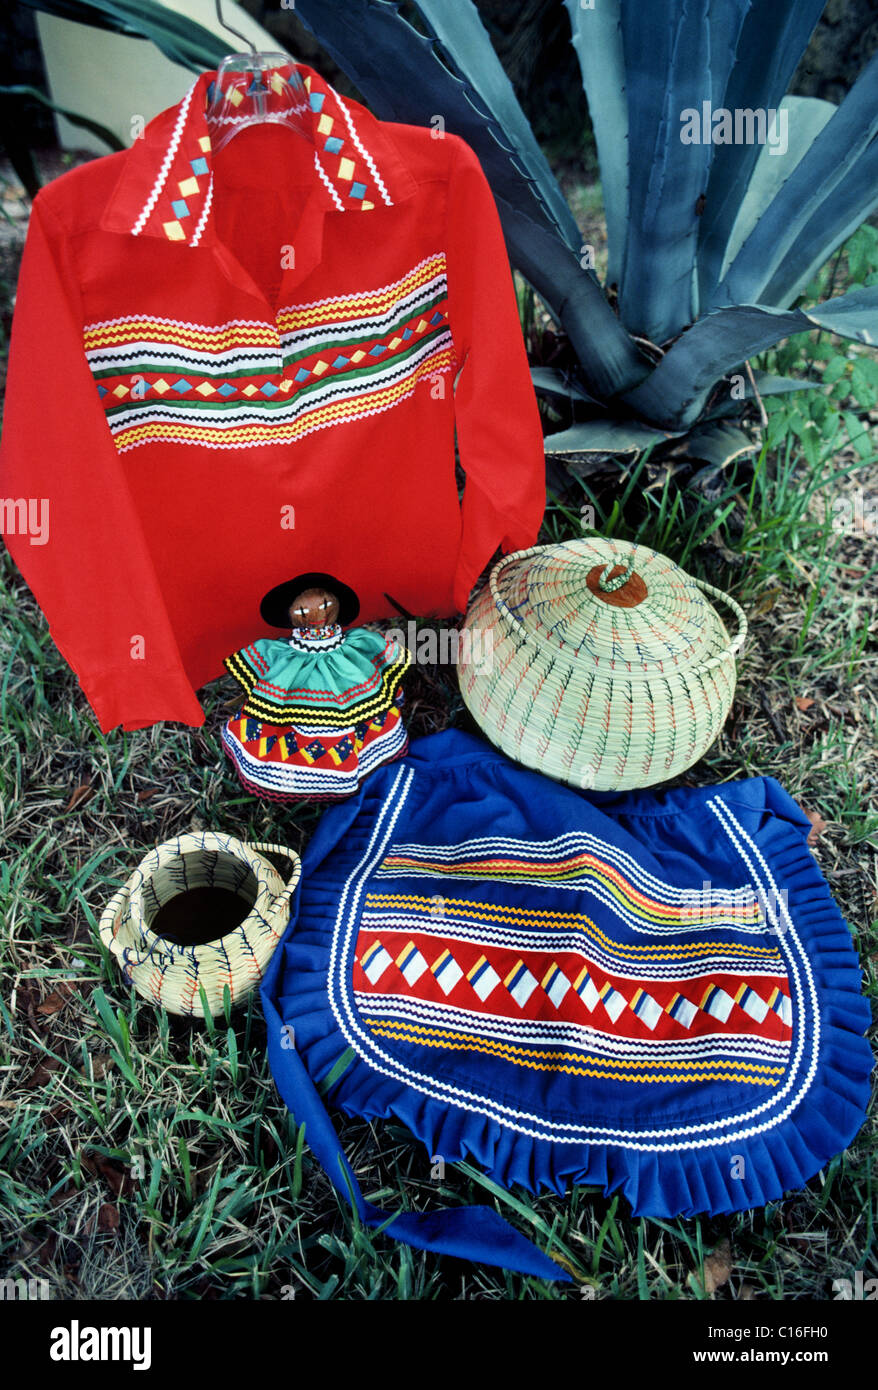 Miccosukee traditionnel et l'artisanat et de vêtements indiens Séminoles affiché dans un village tribal dans les Everglades de Floride, USA Banque D'Images